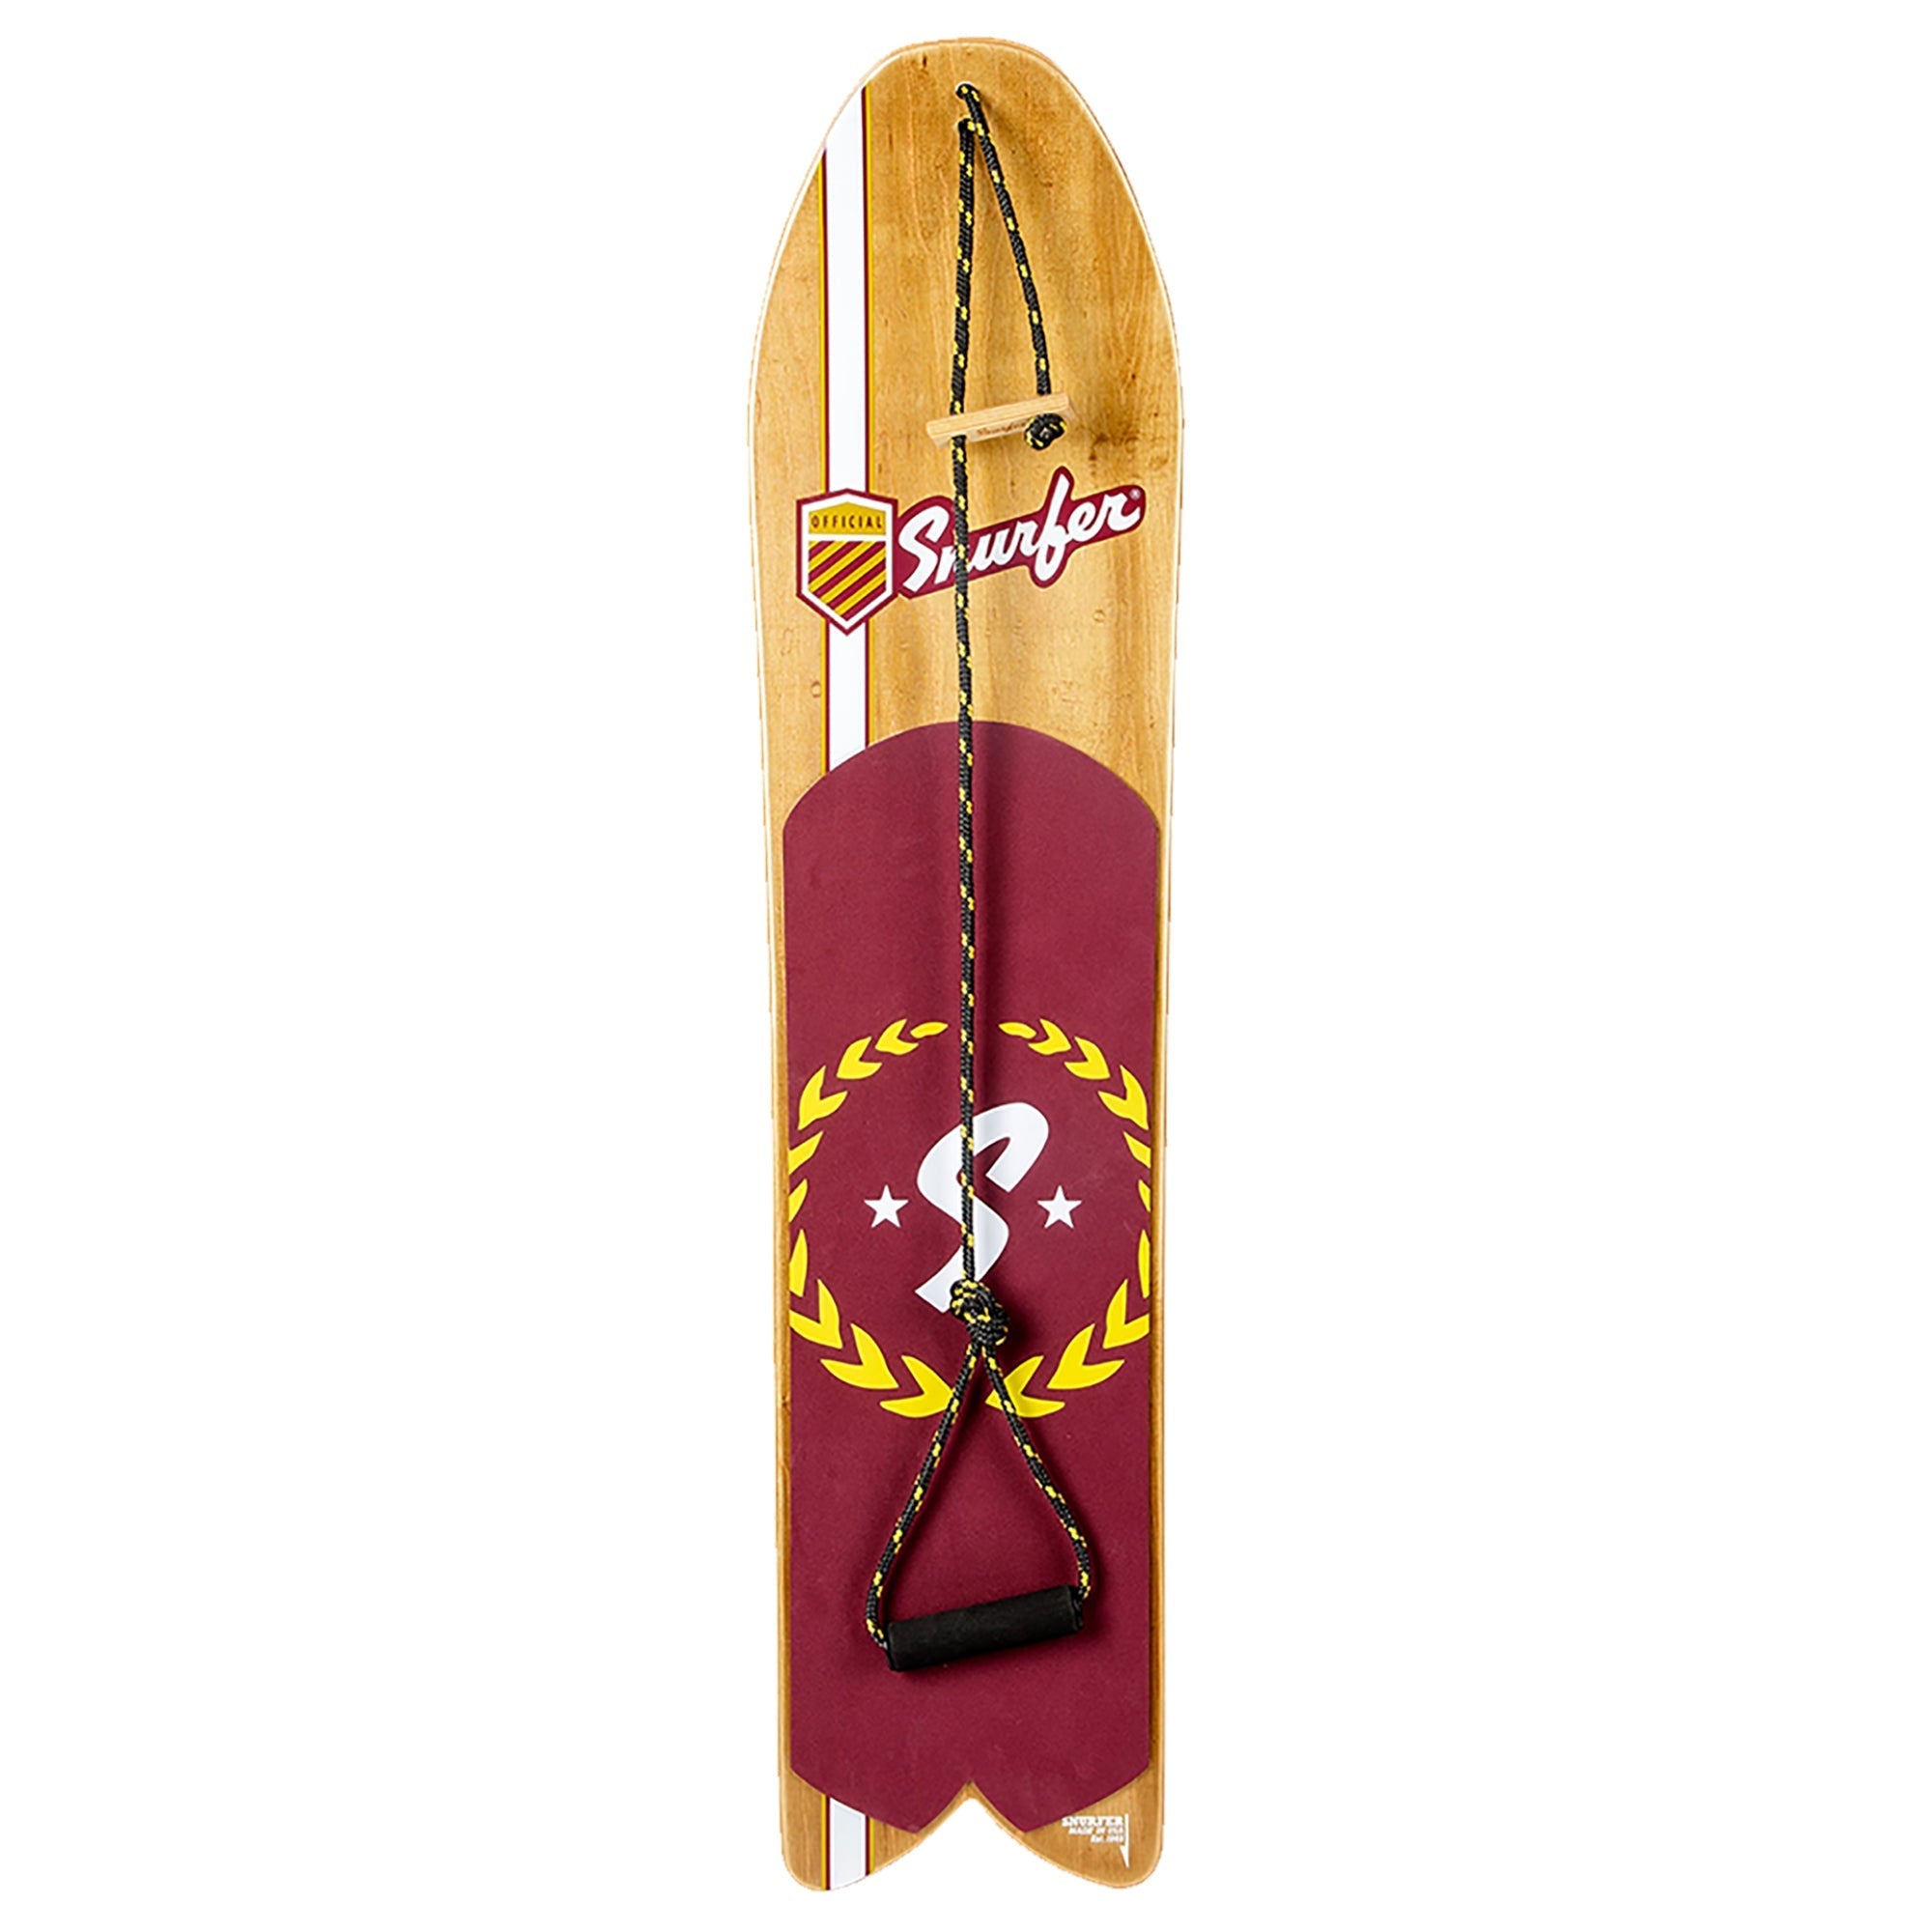 Drifter - Snurfer Boards - snurferboards - snurfer - snowboard